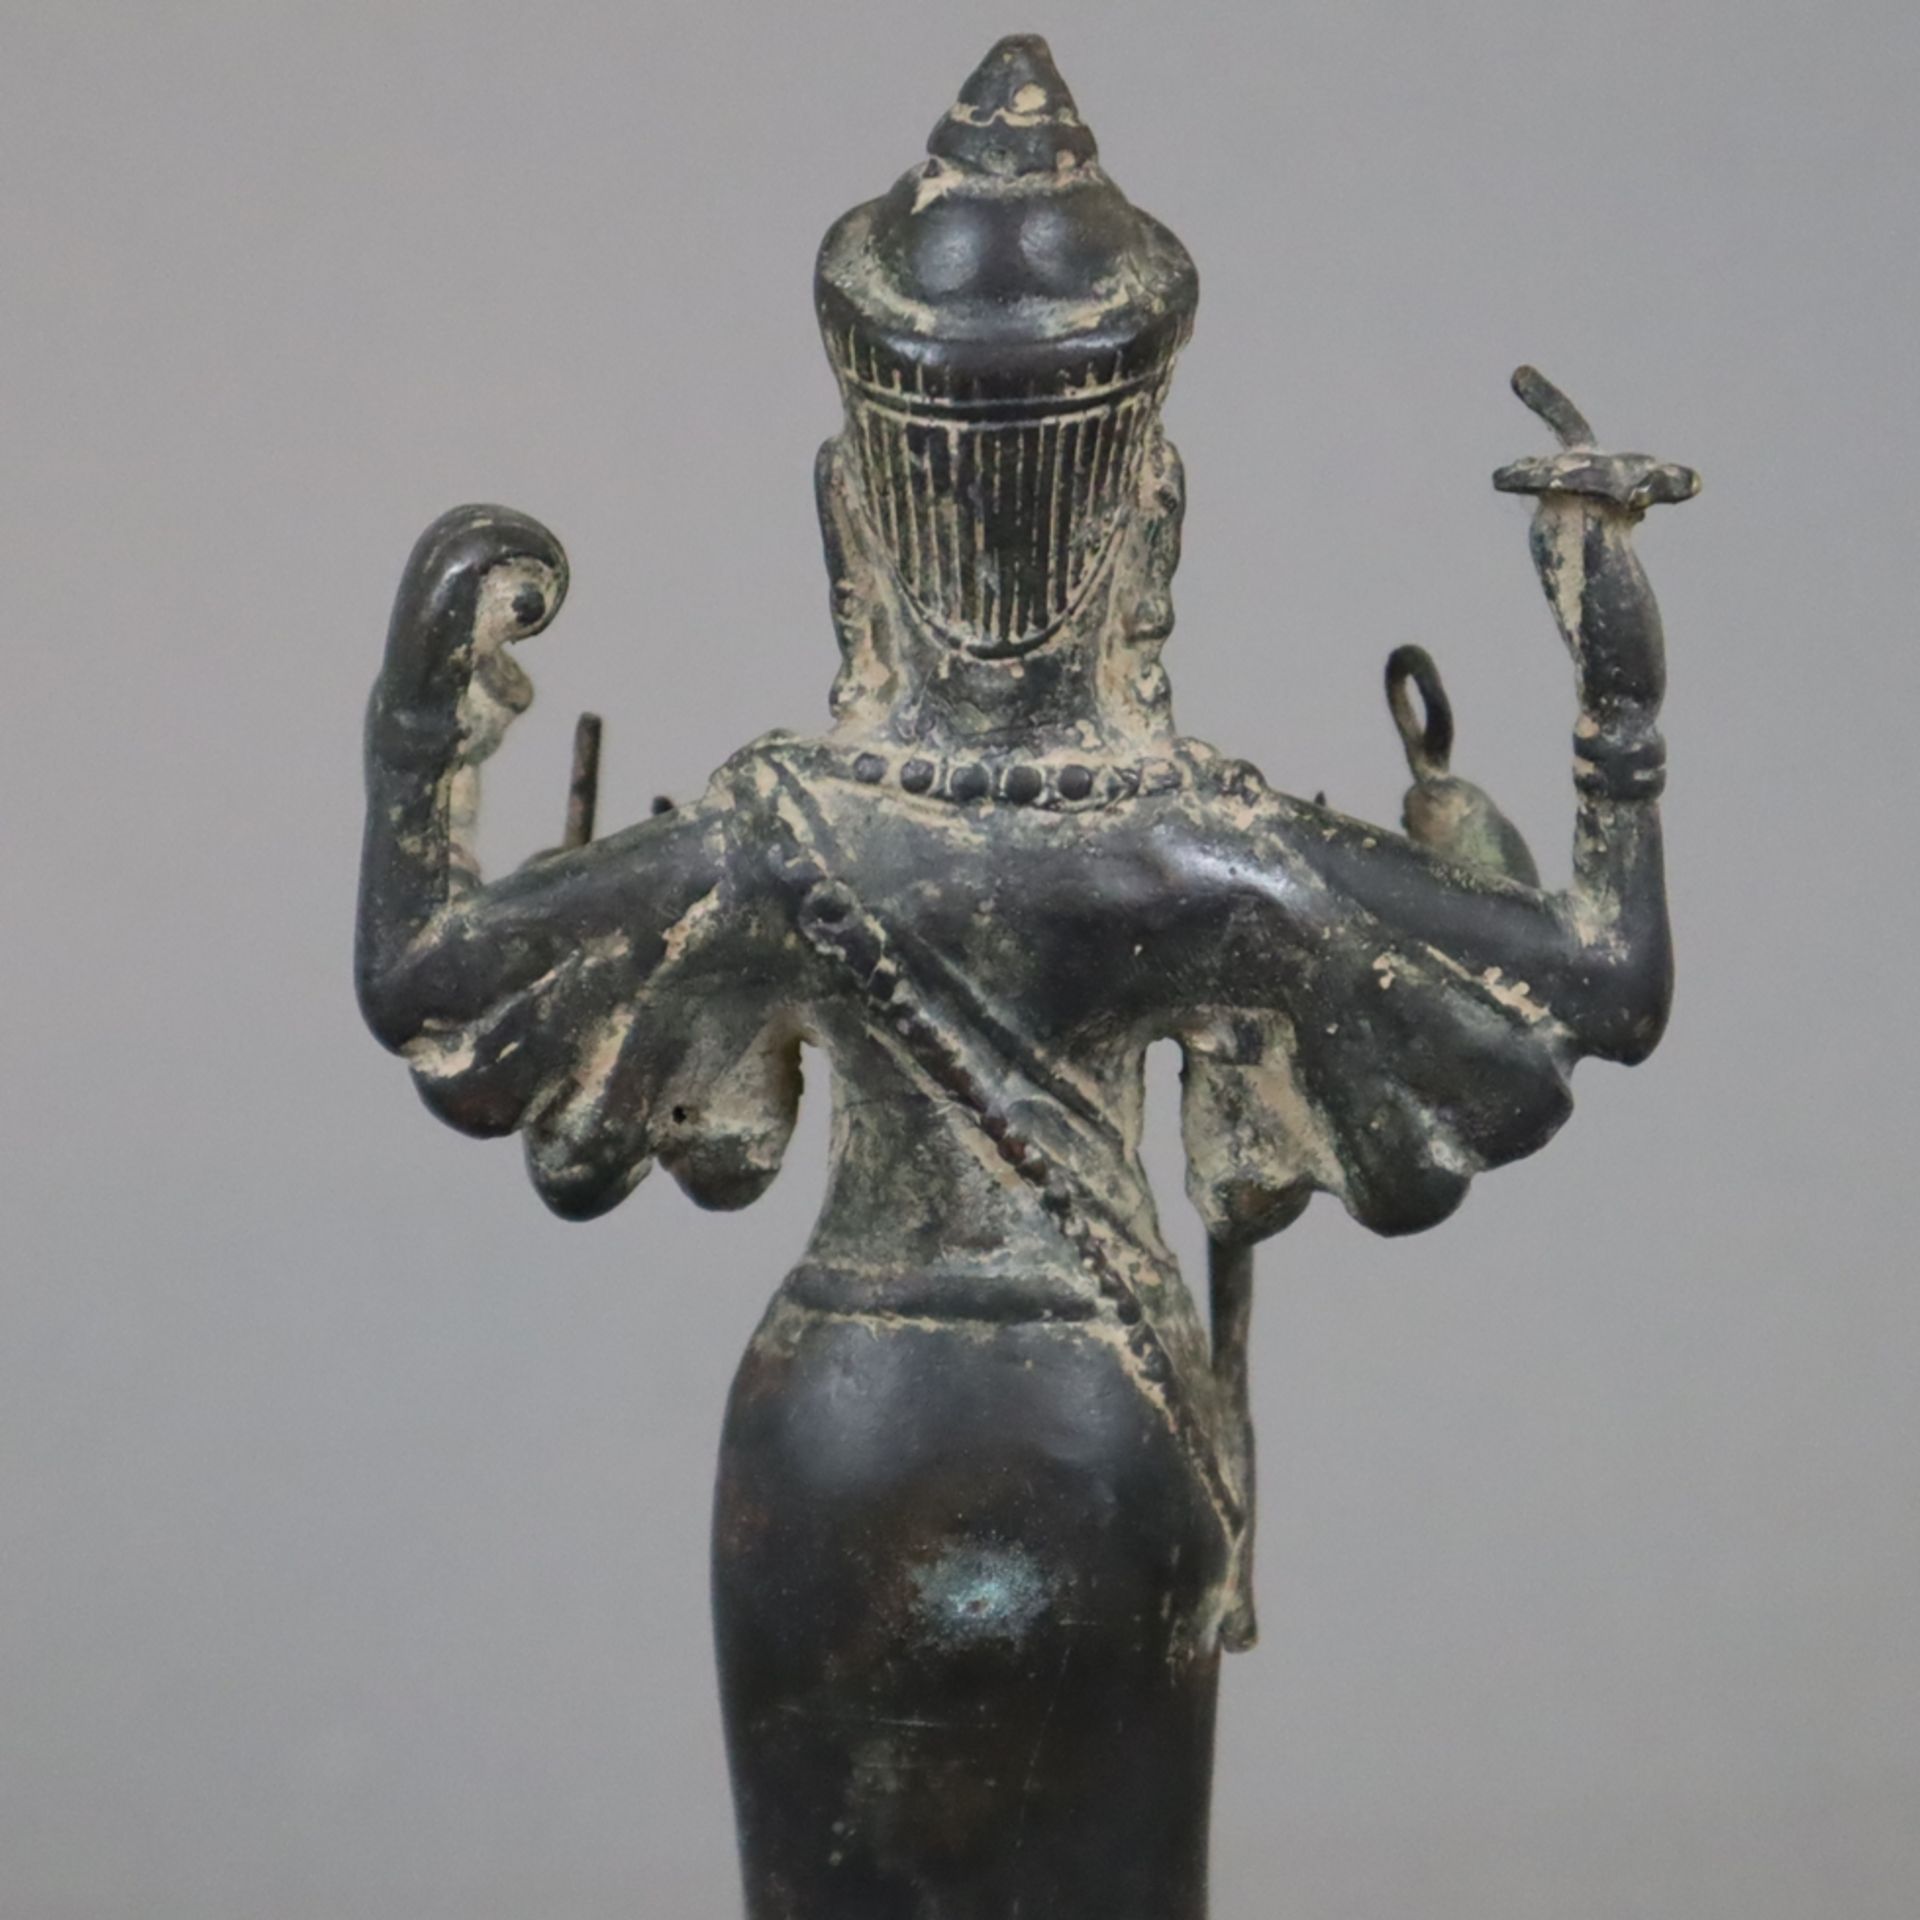 Bronzefigur einer Khmer-Gottheit - wohl Lokeshvara bzw. Shiva, im Angkor-Stil, Bronze auf Holzsocke - Bild 7 aus 7